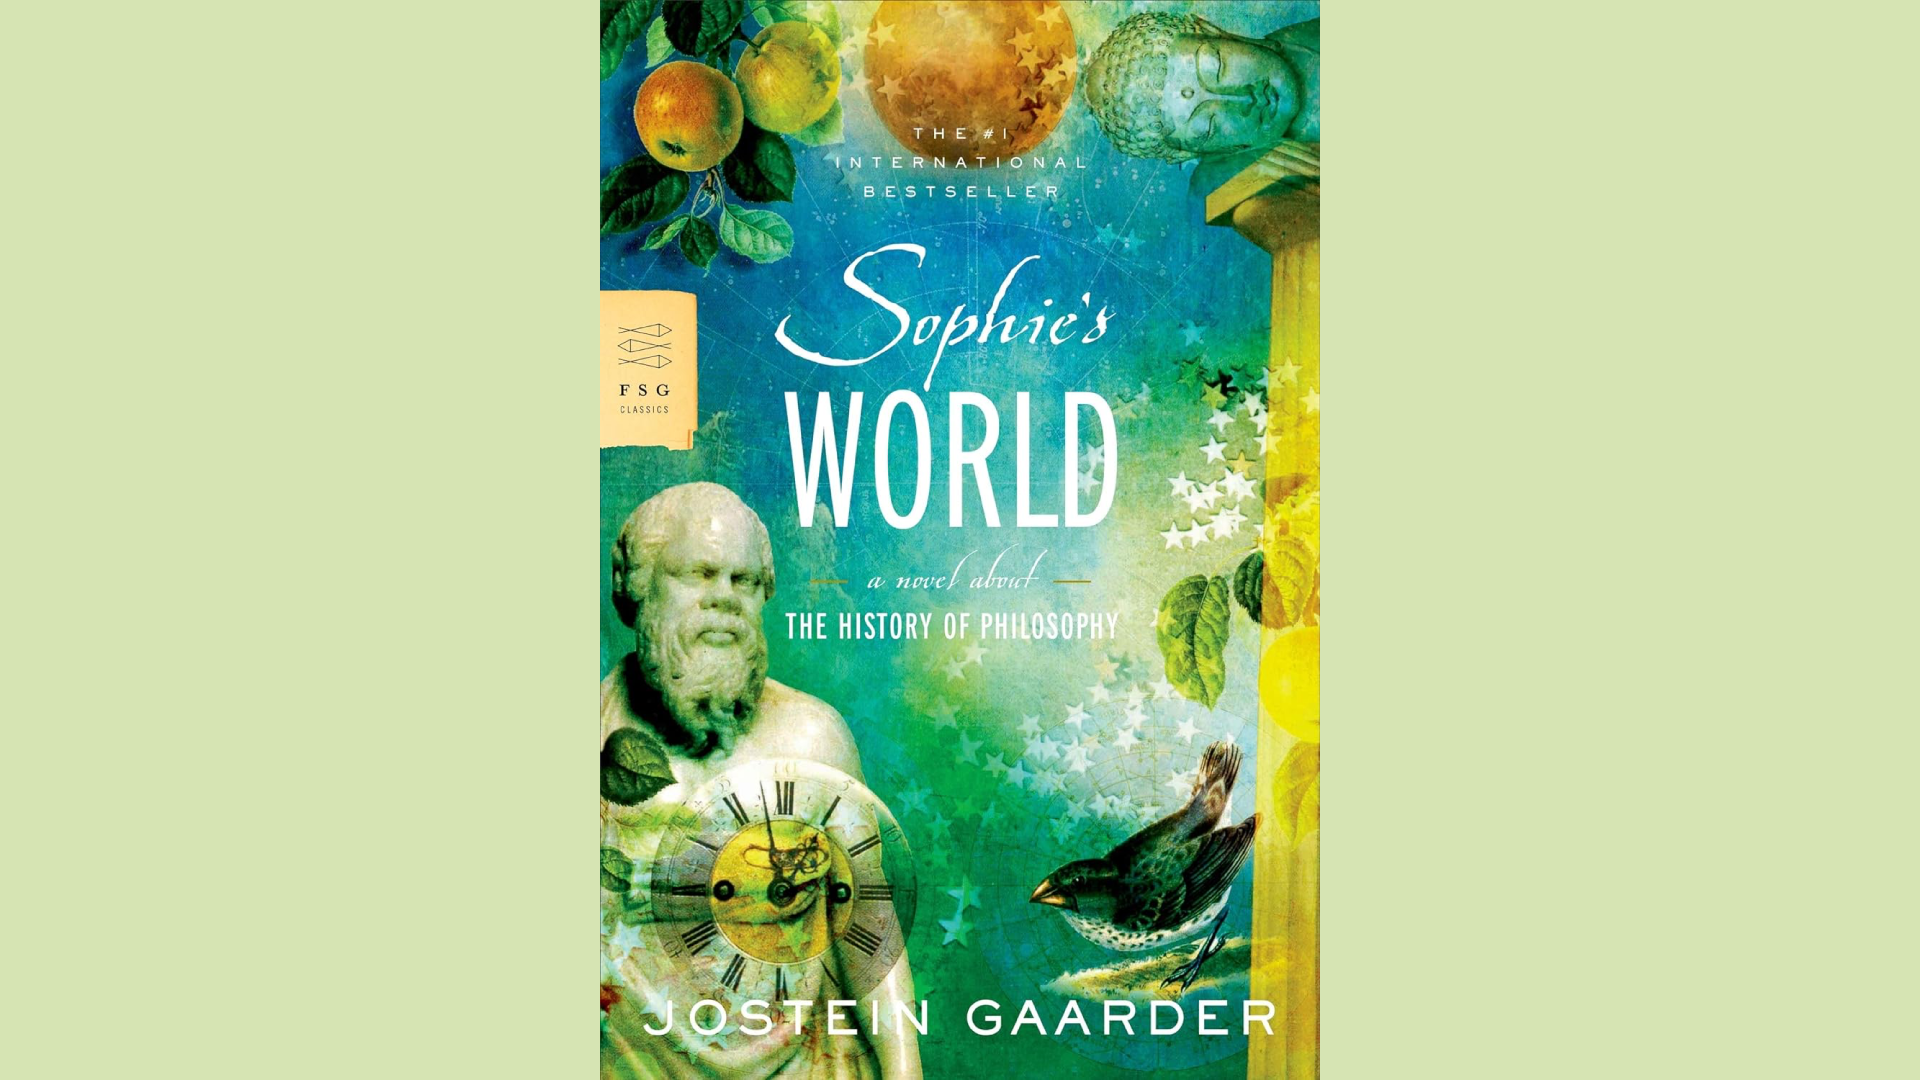 Summary "Sophie's World" by Jostein Gaarder